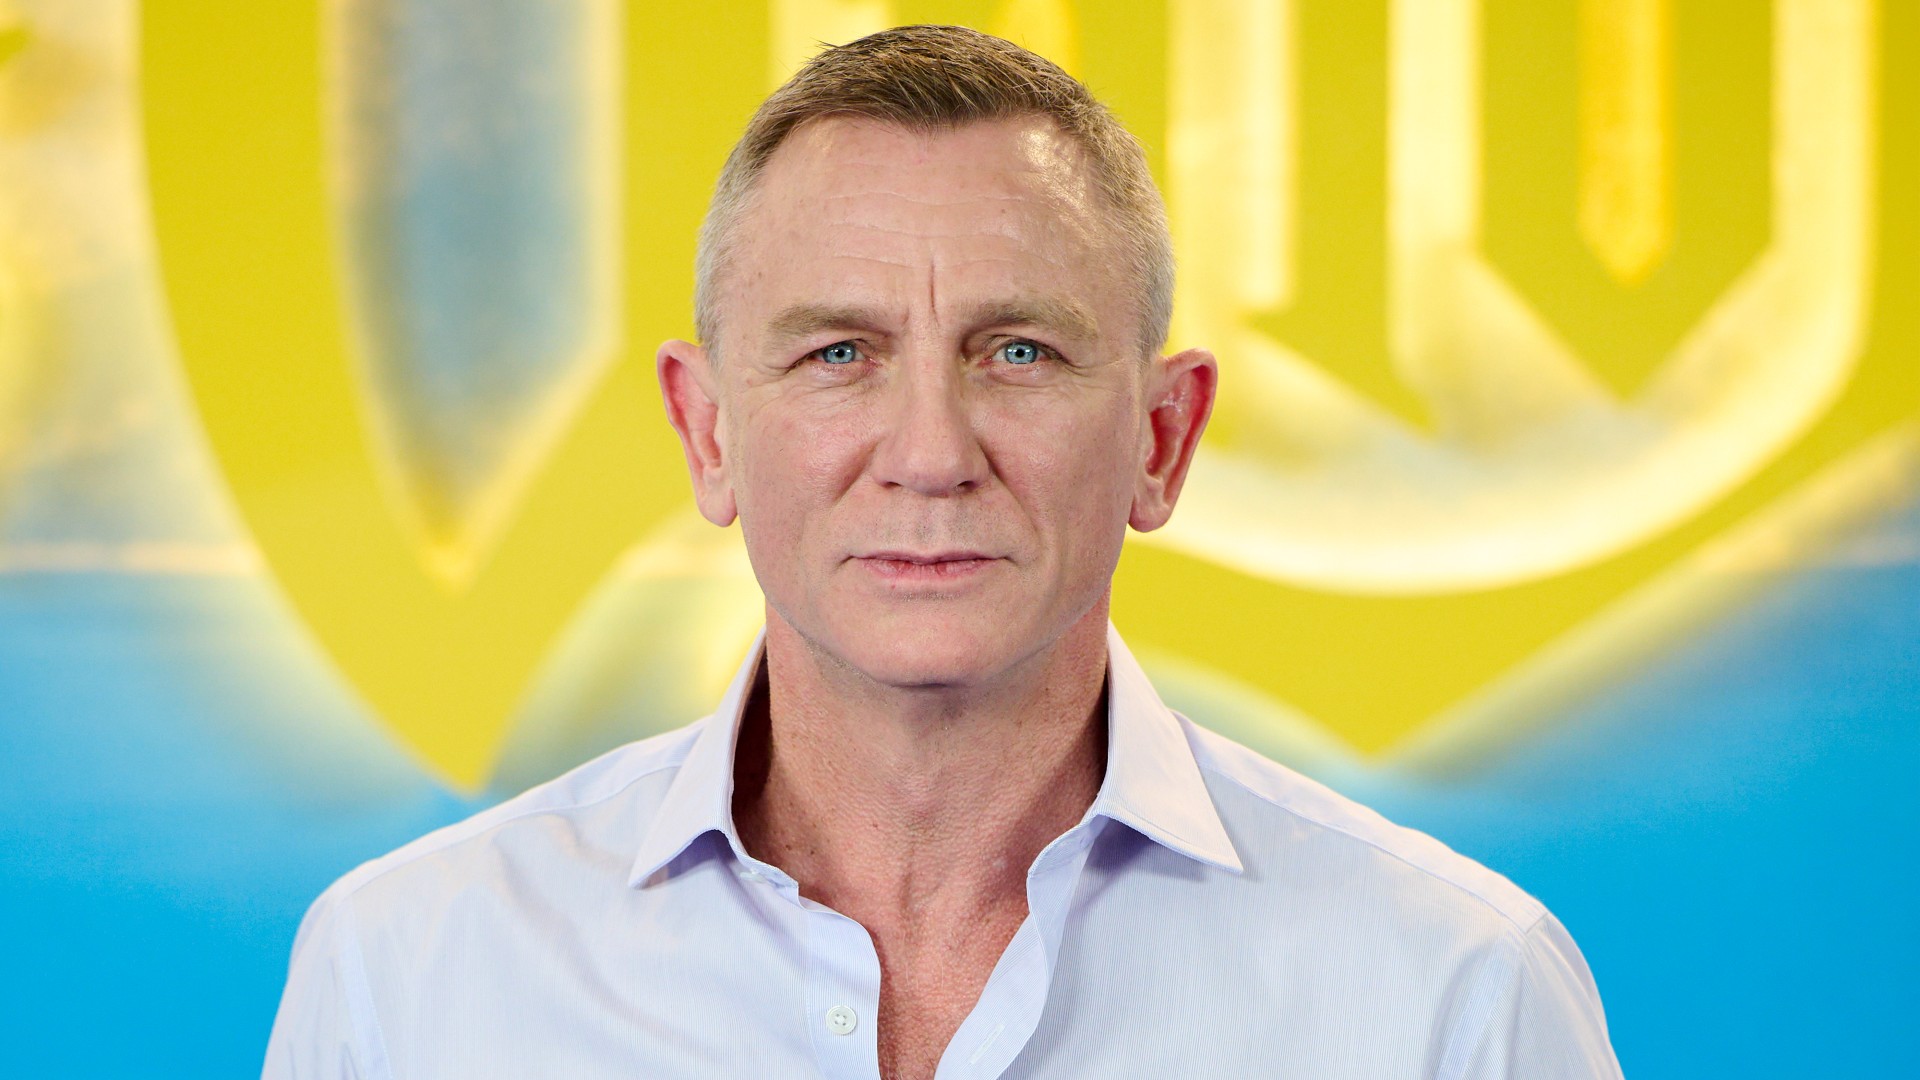 Casting News: Daniel Craig to Lead Film Adaptation of William S. Burroughs' 'Queer'